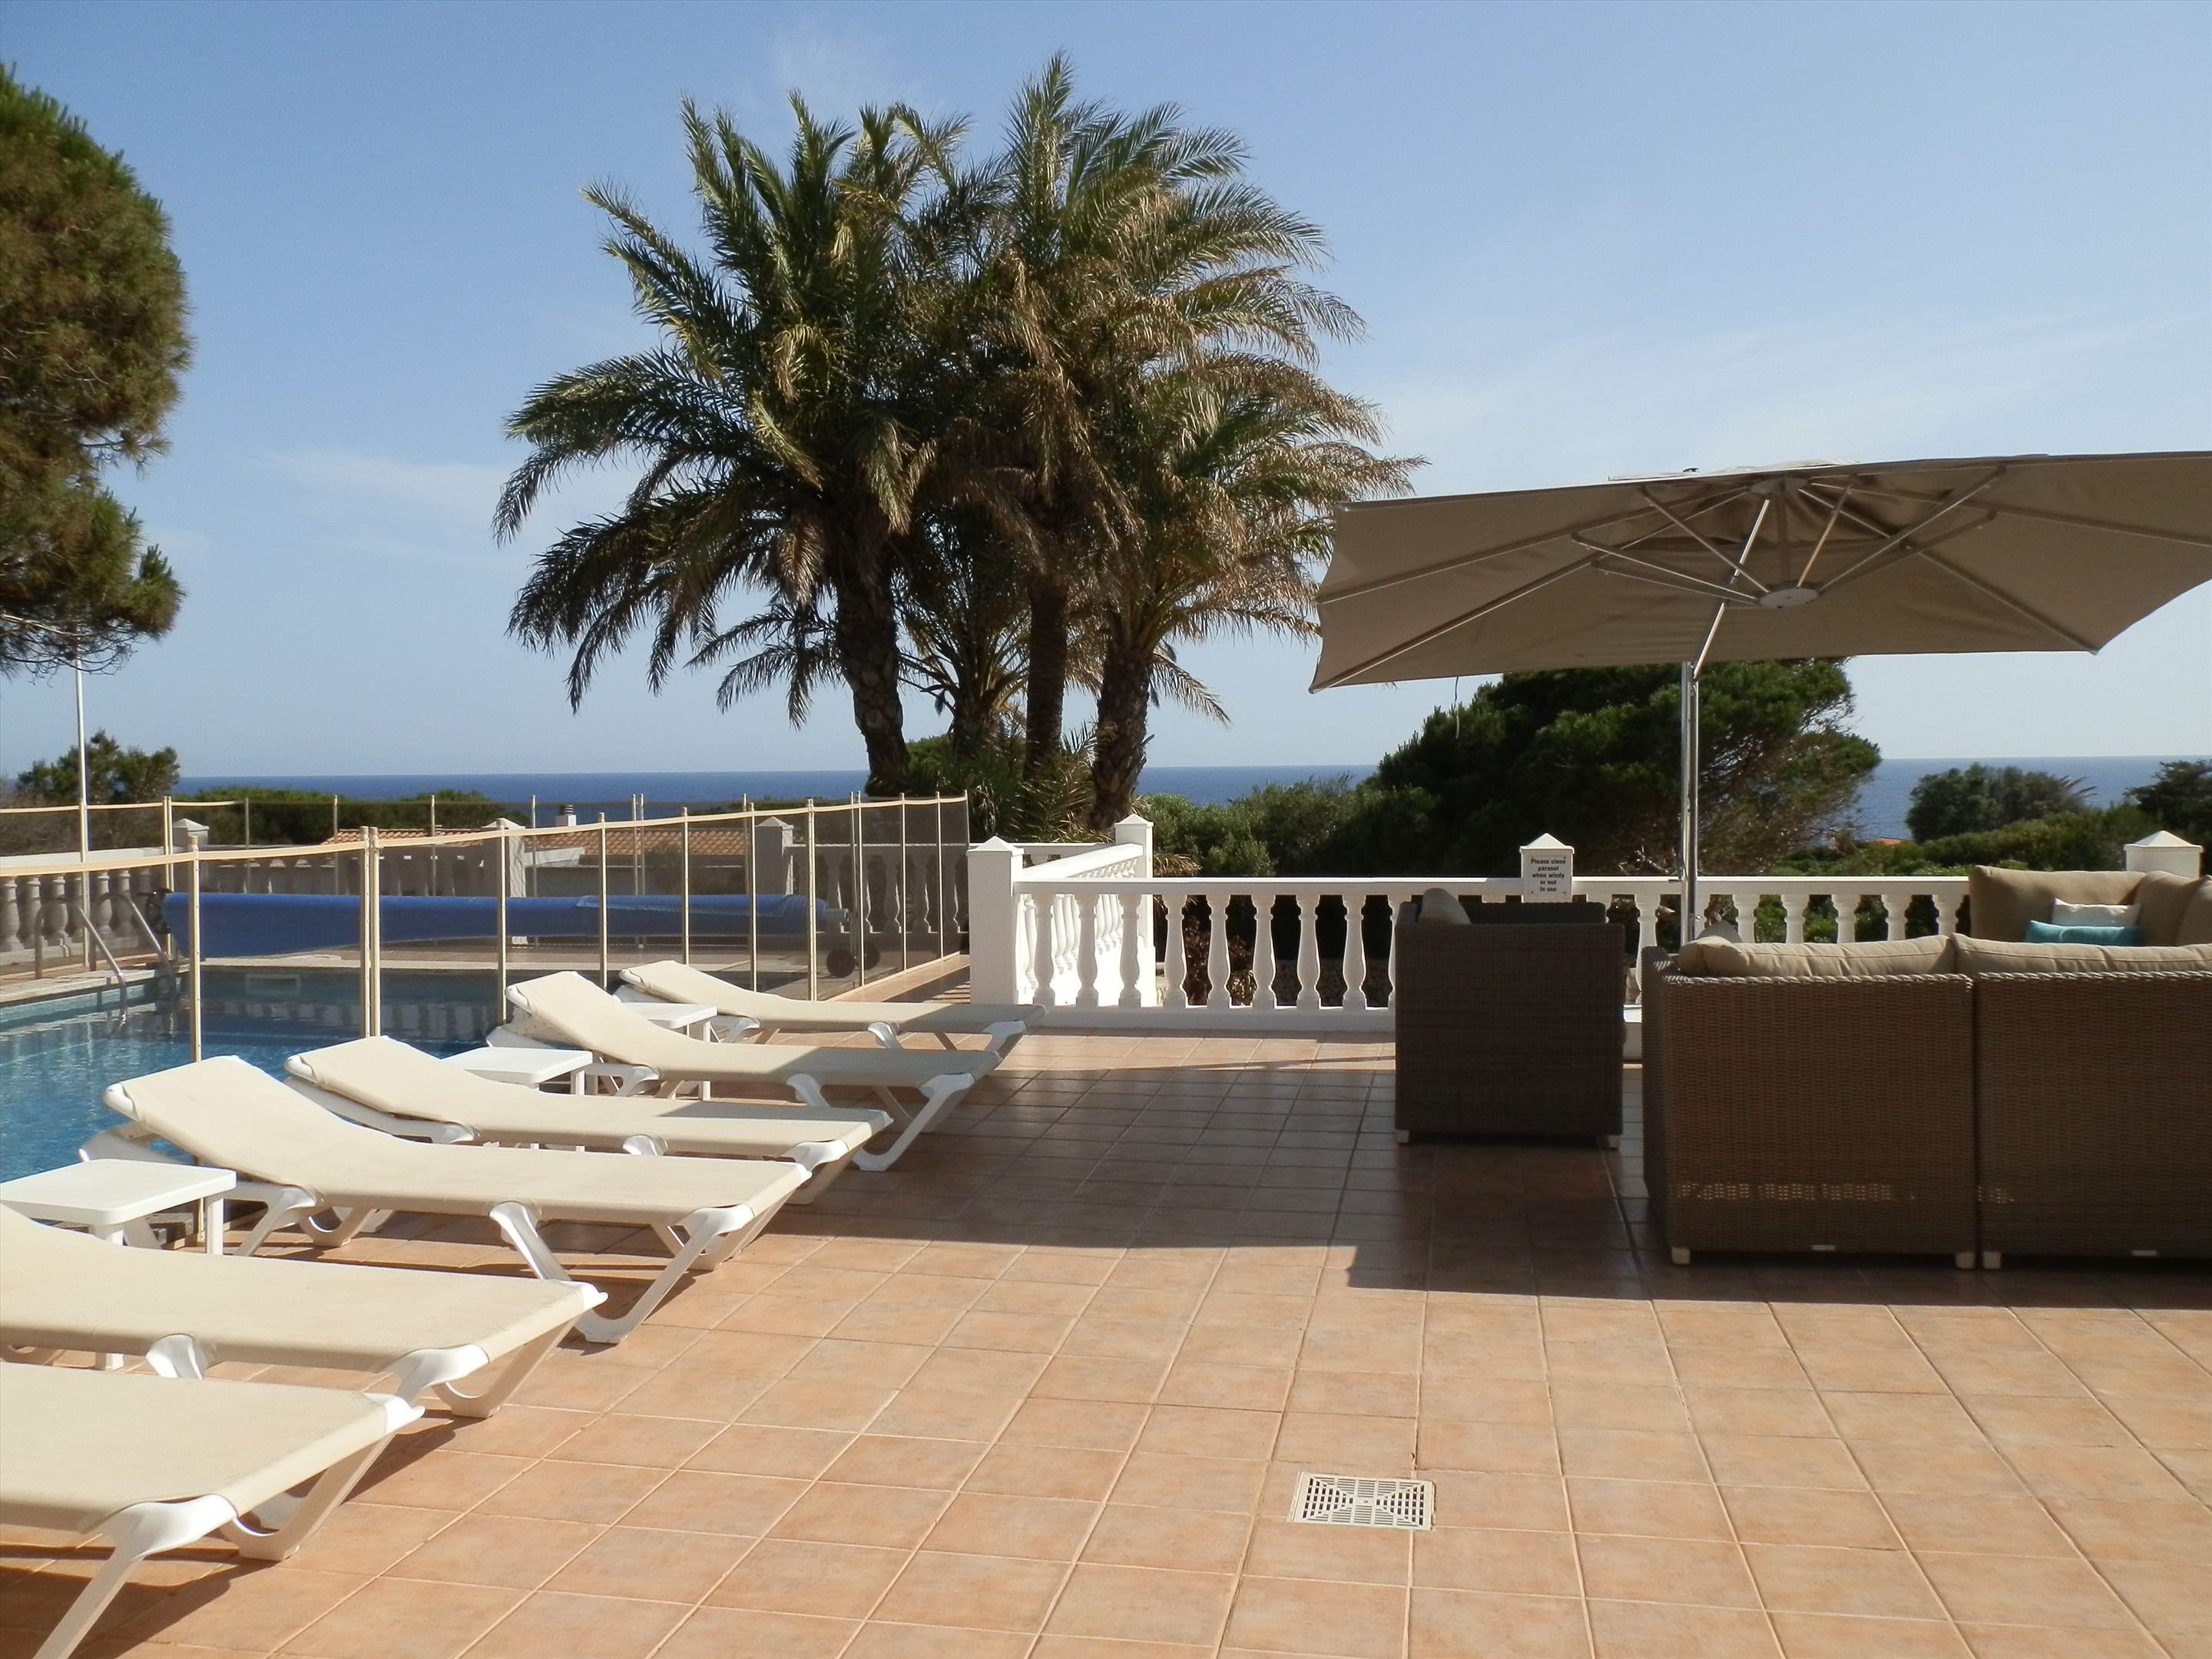 Casa del Mar de Ana-Cristo, 5 Bedroom rate, 5 bedroom villa in Mahon, San Luis & South East, Menorca Photo #11